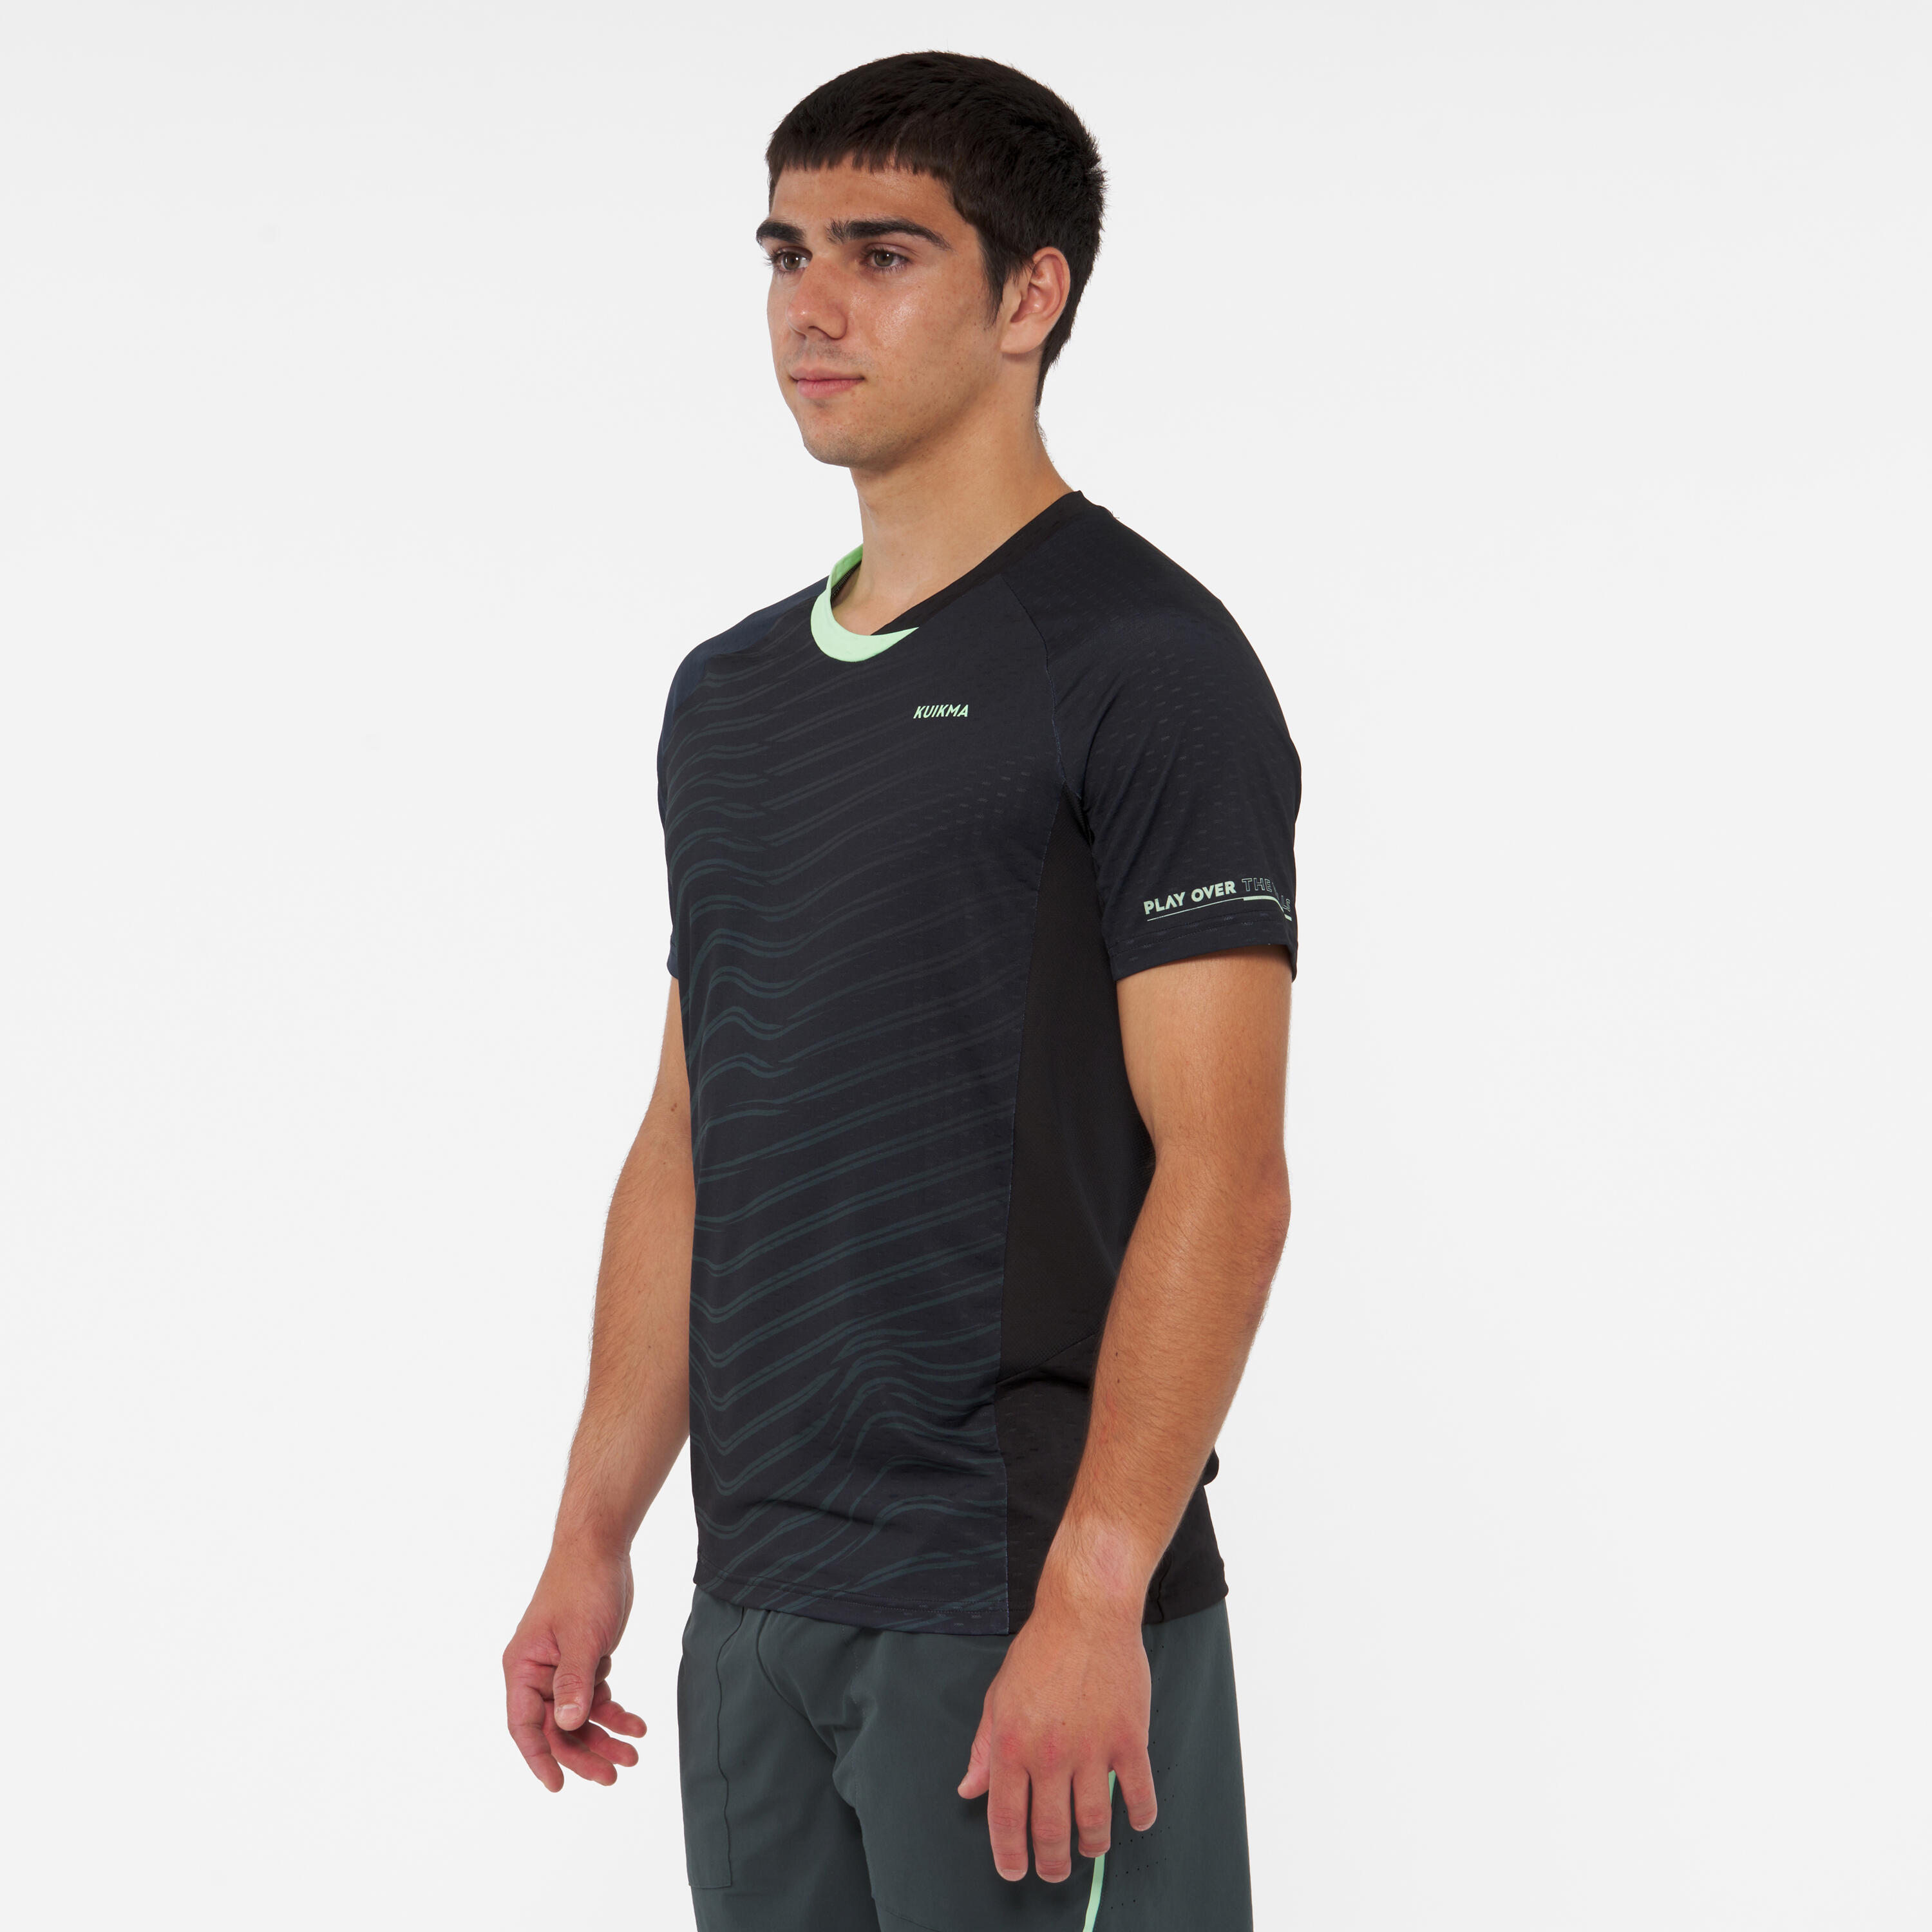 Men's Technical Short-Sleeved Padel T-Shirt Kuikma 900 - Green 4/10